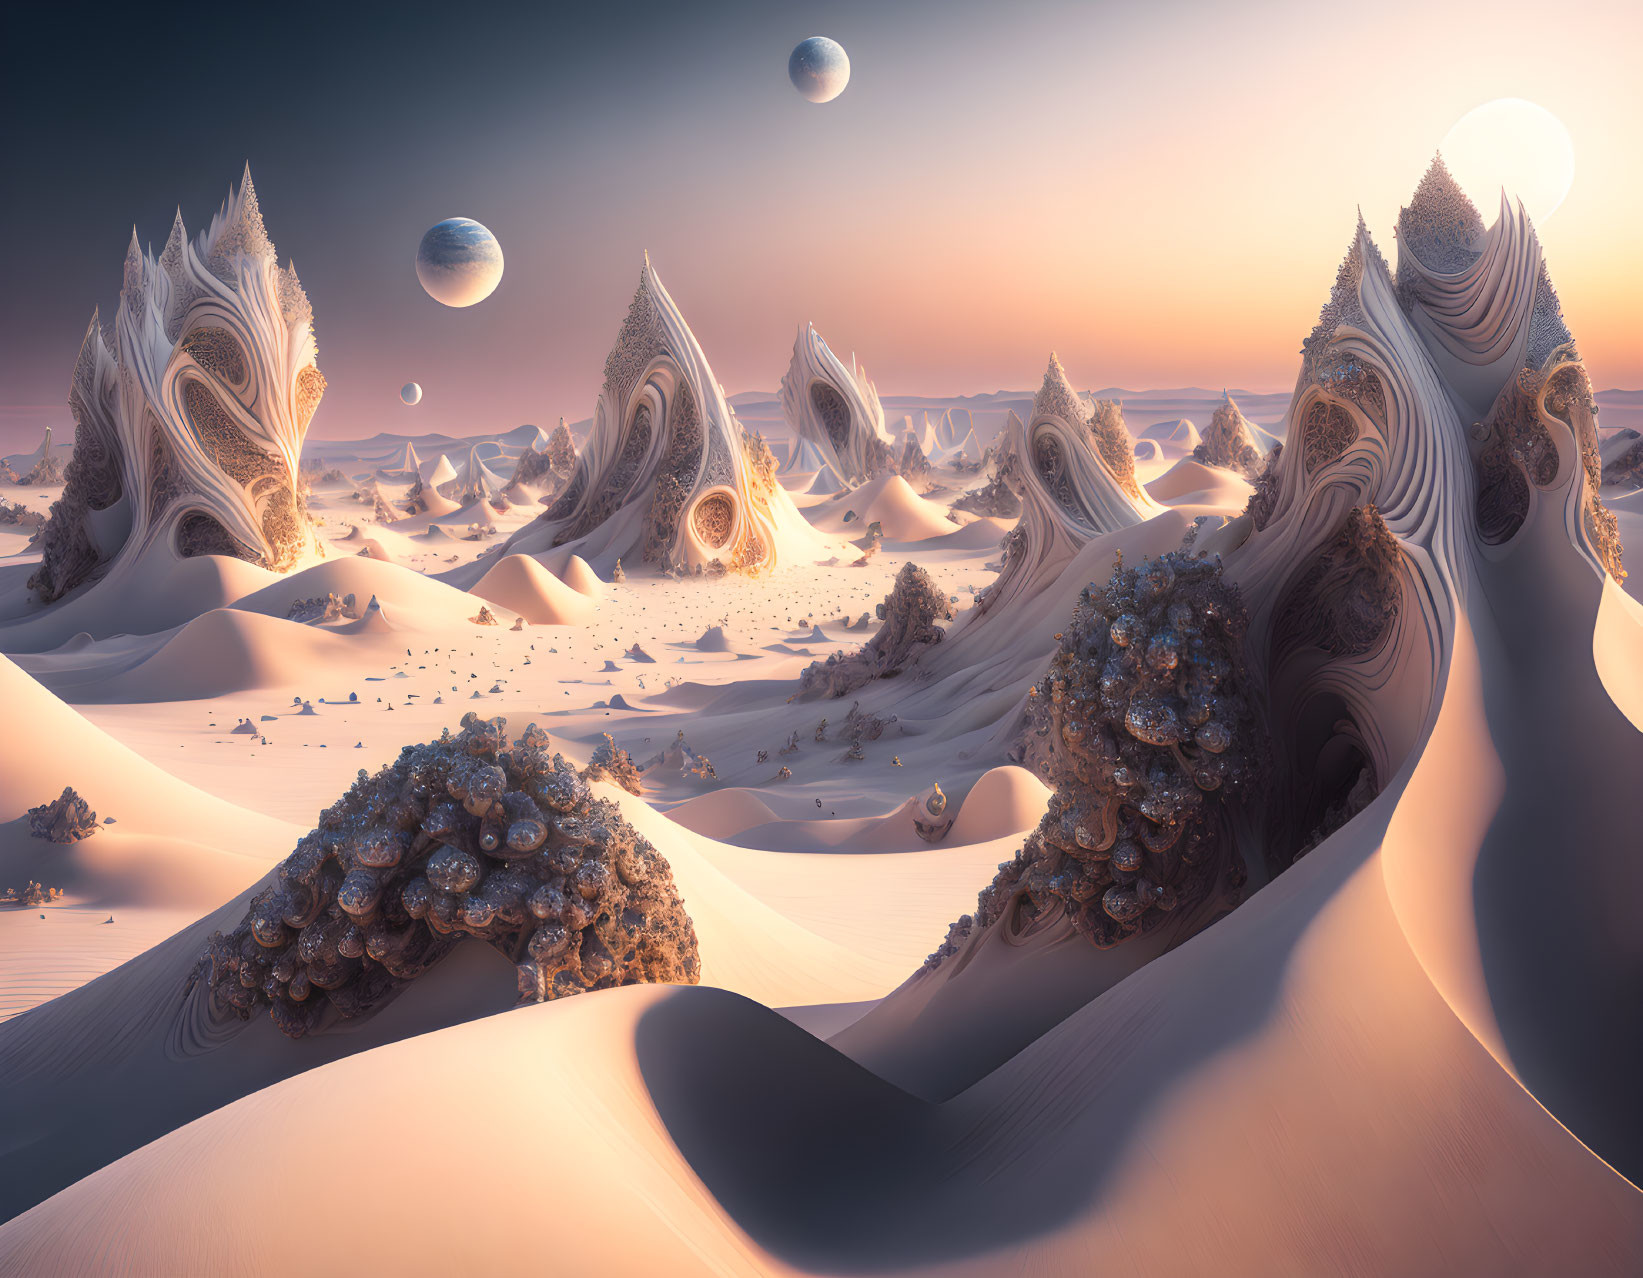 Biomorphic desert